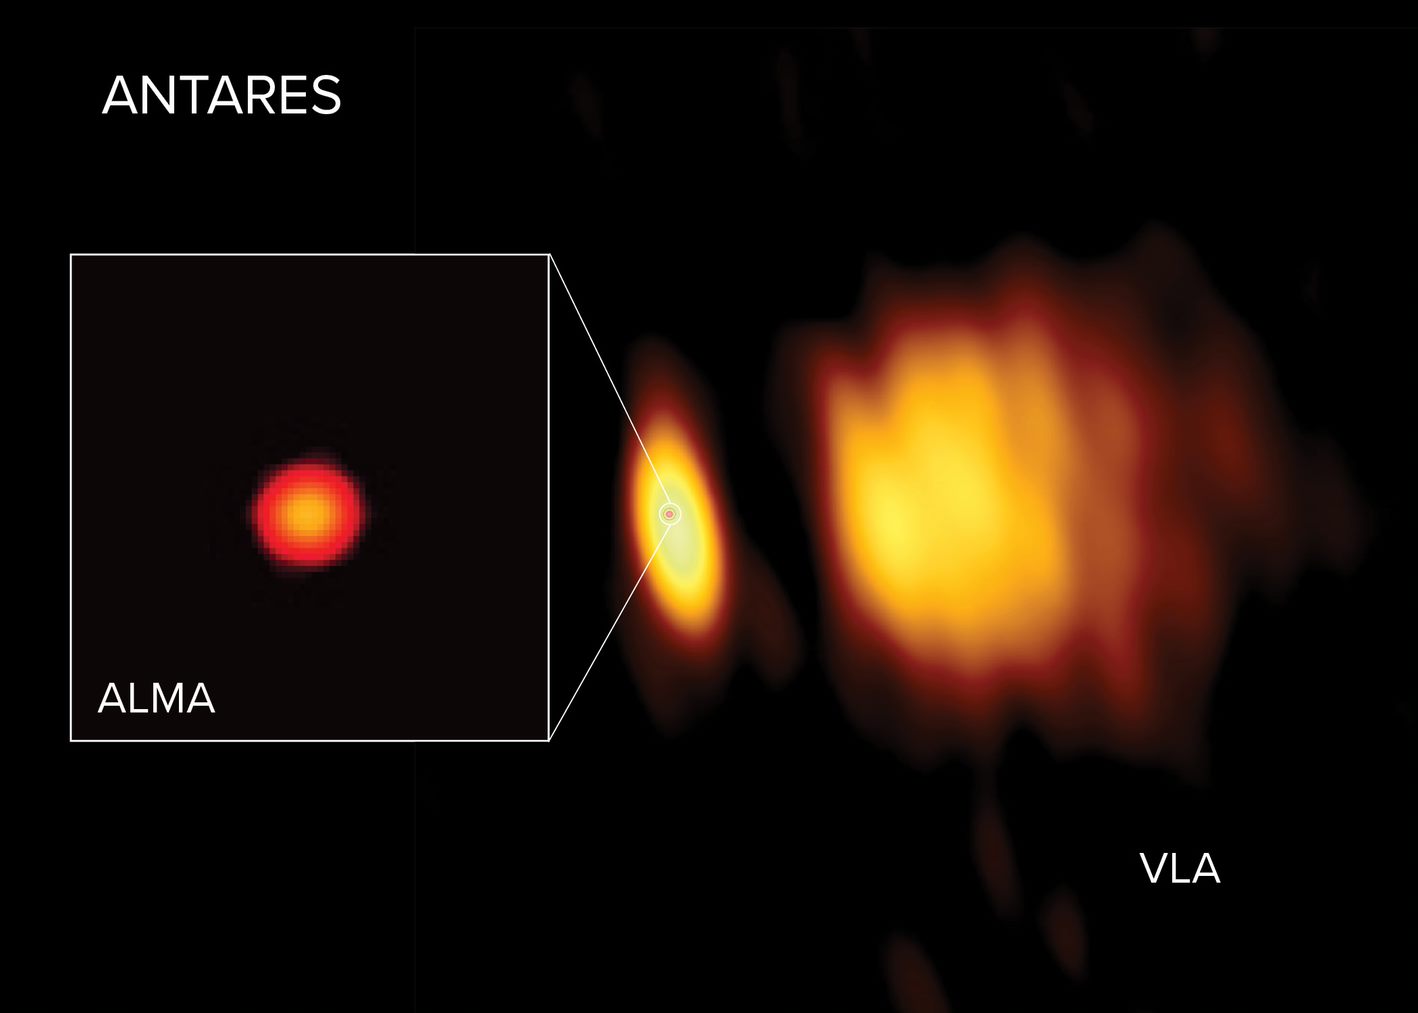 ニュース - 電波望遠鏡で見た赤色超巨星アンタレスの大気 - アルマ望遠鏡